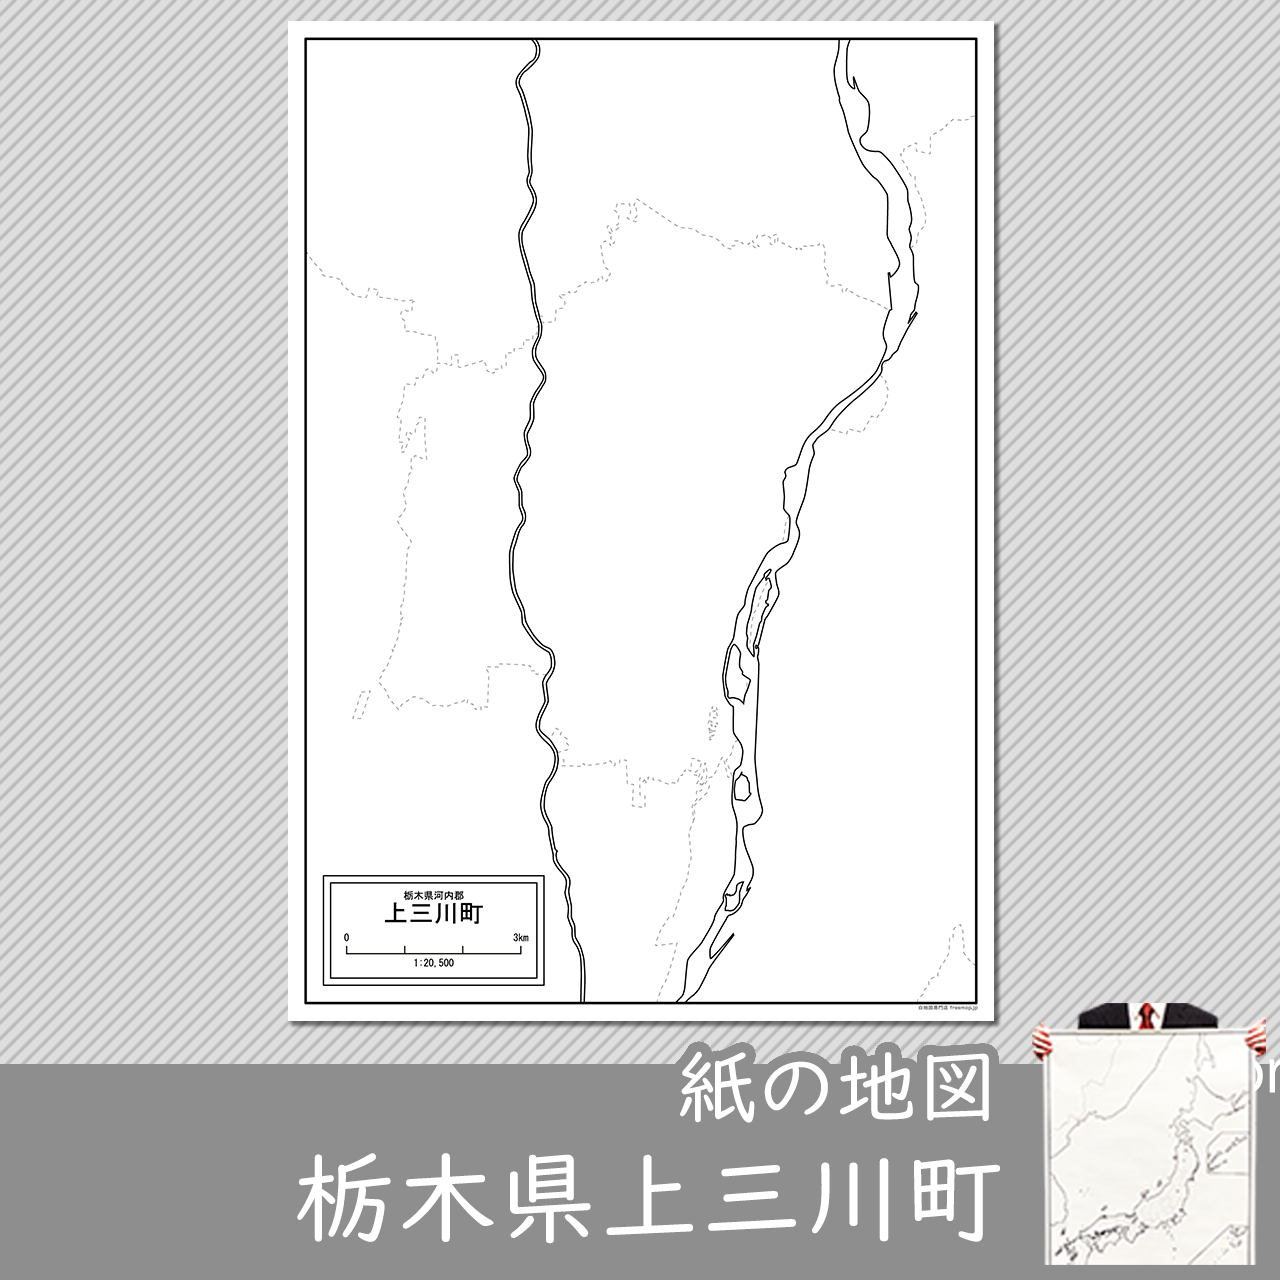 上三川町の紙の白地図のサムネイル